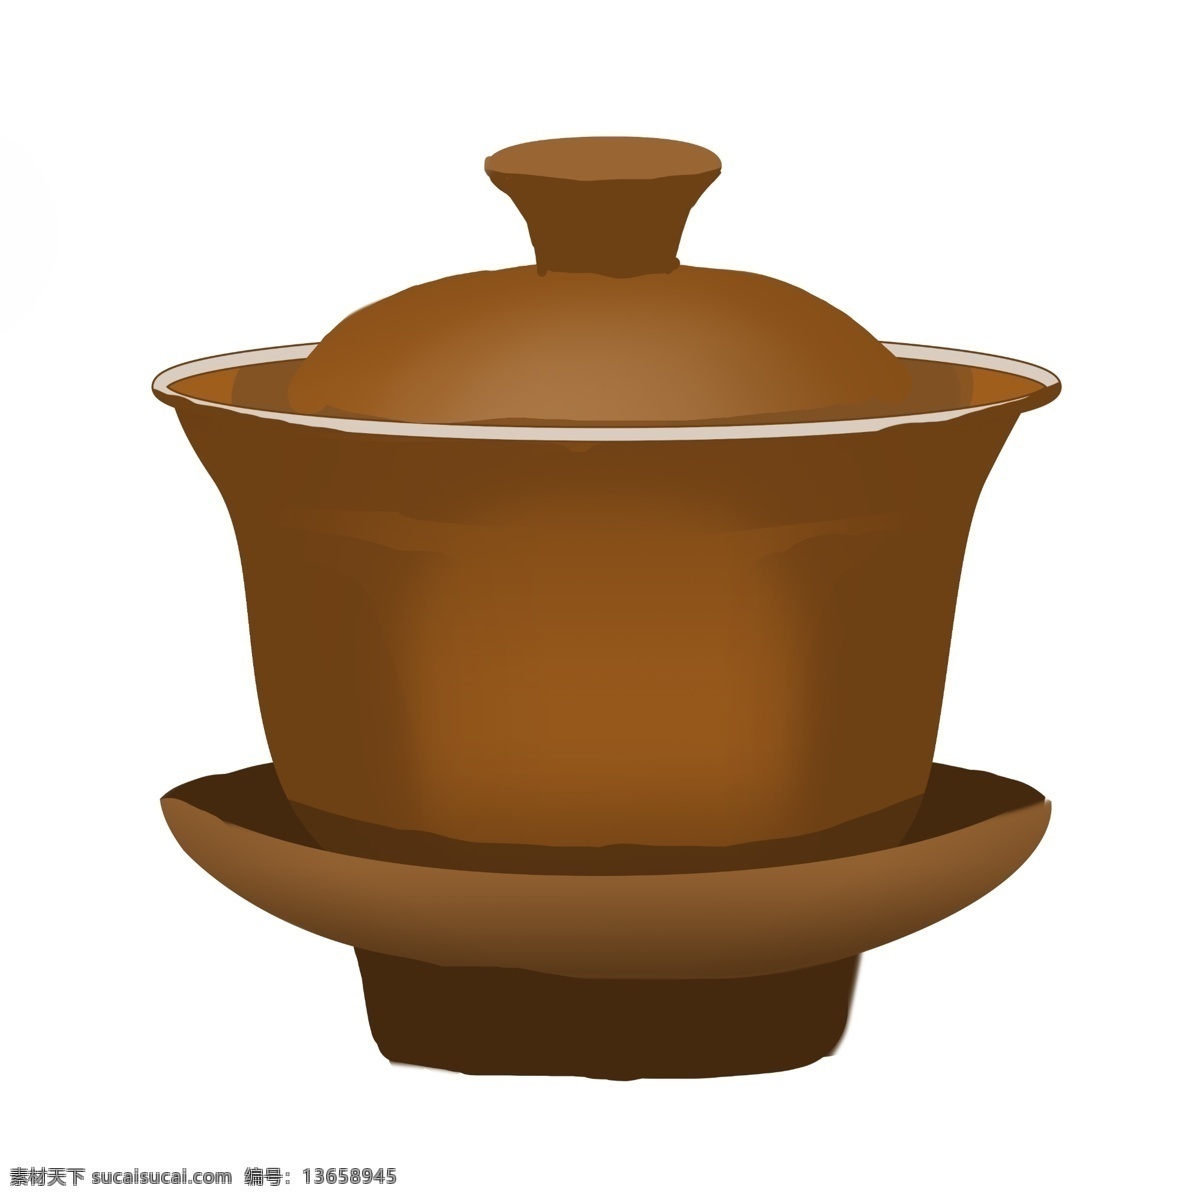 中国 风 陶瓷 茶盅 插图 陶瓷茶盅 一个陶瓷茶具 茶壶 中国风茶具 茶具 品茶喝茶